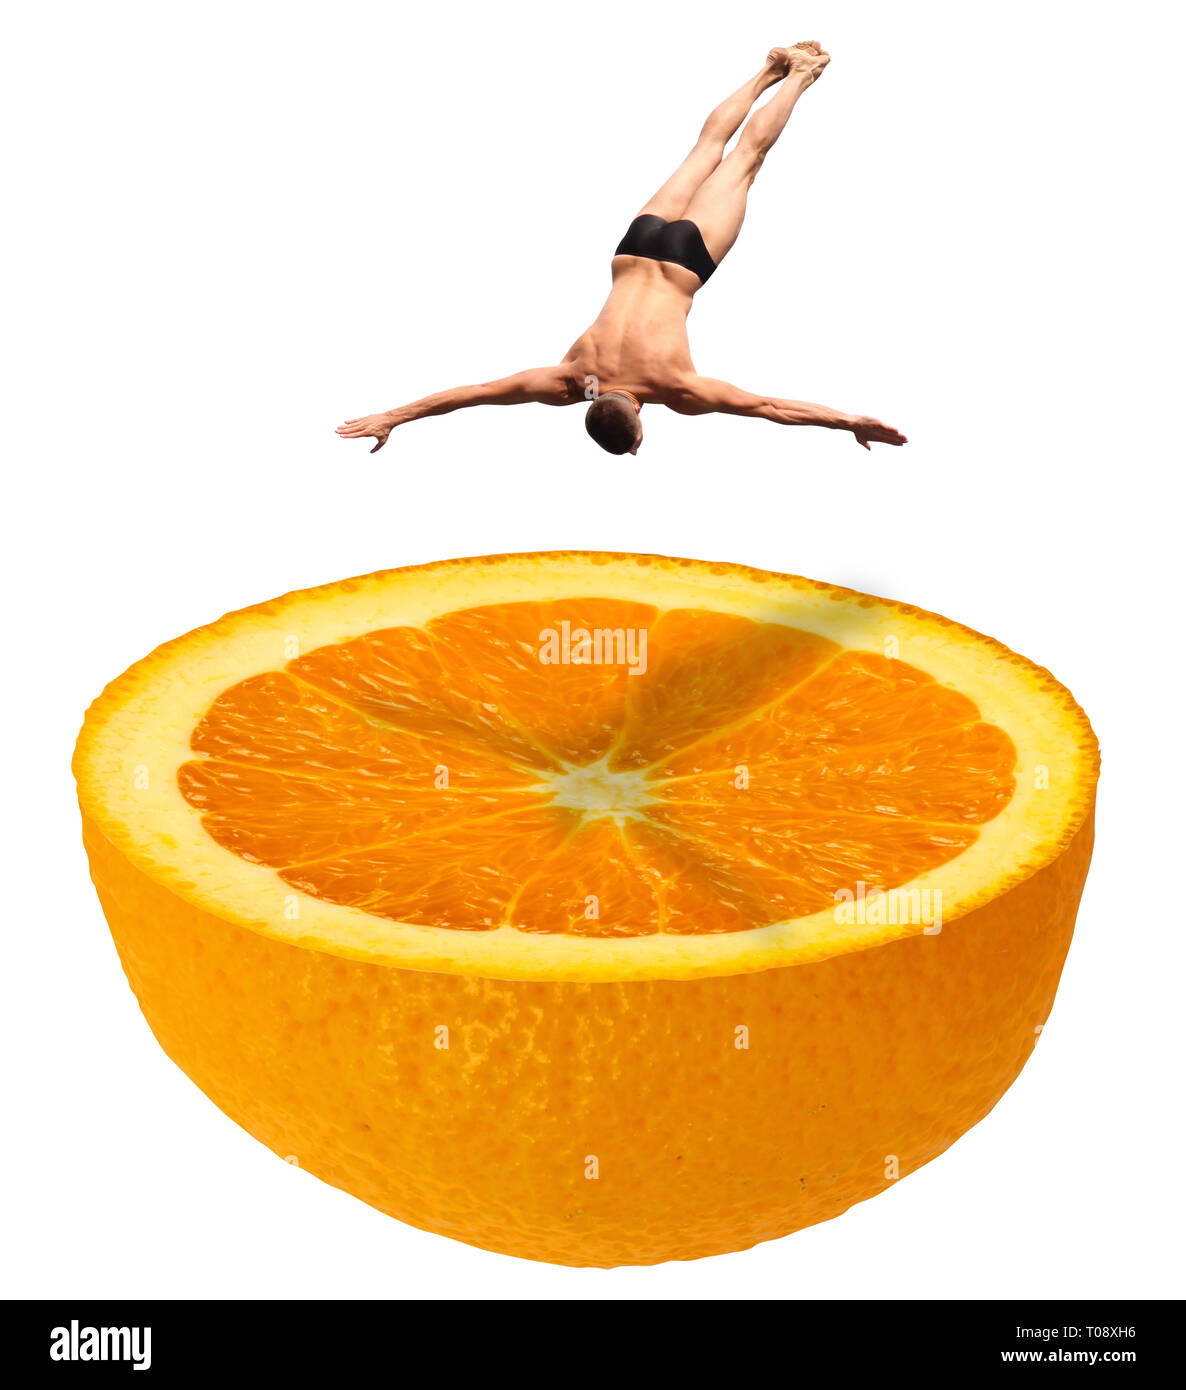 Plongée haute en maillot nageur le saut vers le bas dans une des mémoires de la moitié des fruits orange juteuse comme une piscine - photo manipulée concept image - isola Banque D'Images